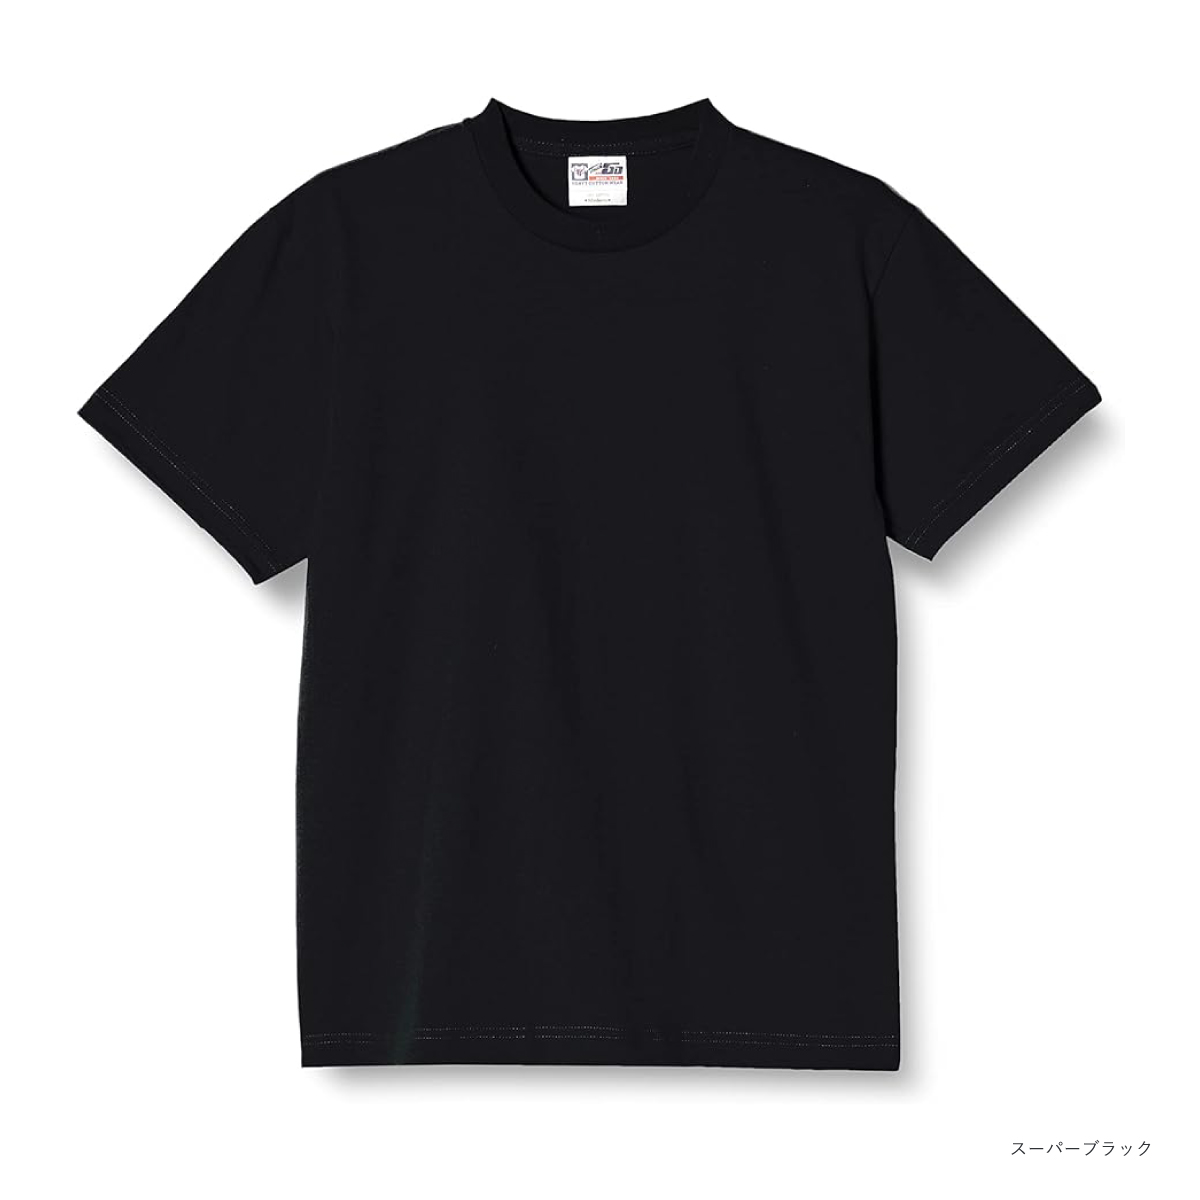 Touch & Go タッチアンドゴー 6.2oz Tシャツ (品番SS1030)